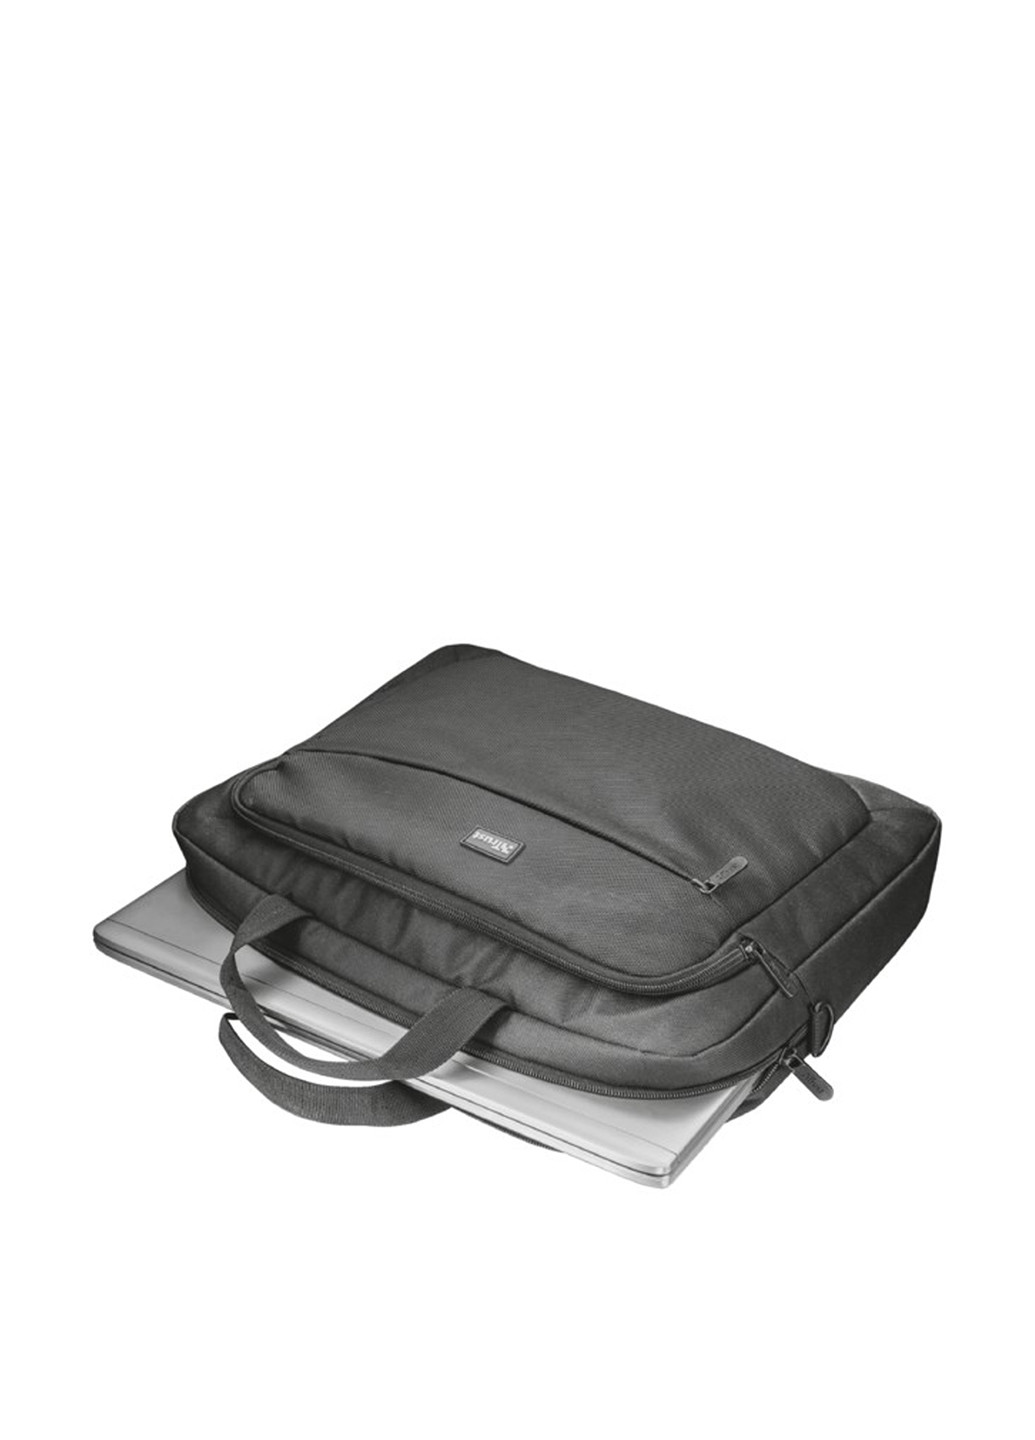 Сумка для ноутбука Lyon Carry Bag for 16 laptops Trust lyon carry bag for 16" laptops (135165297)